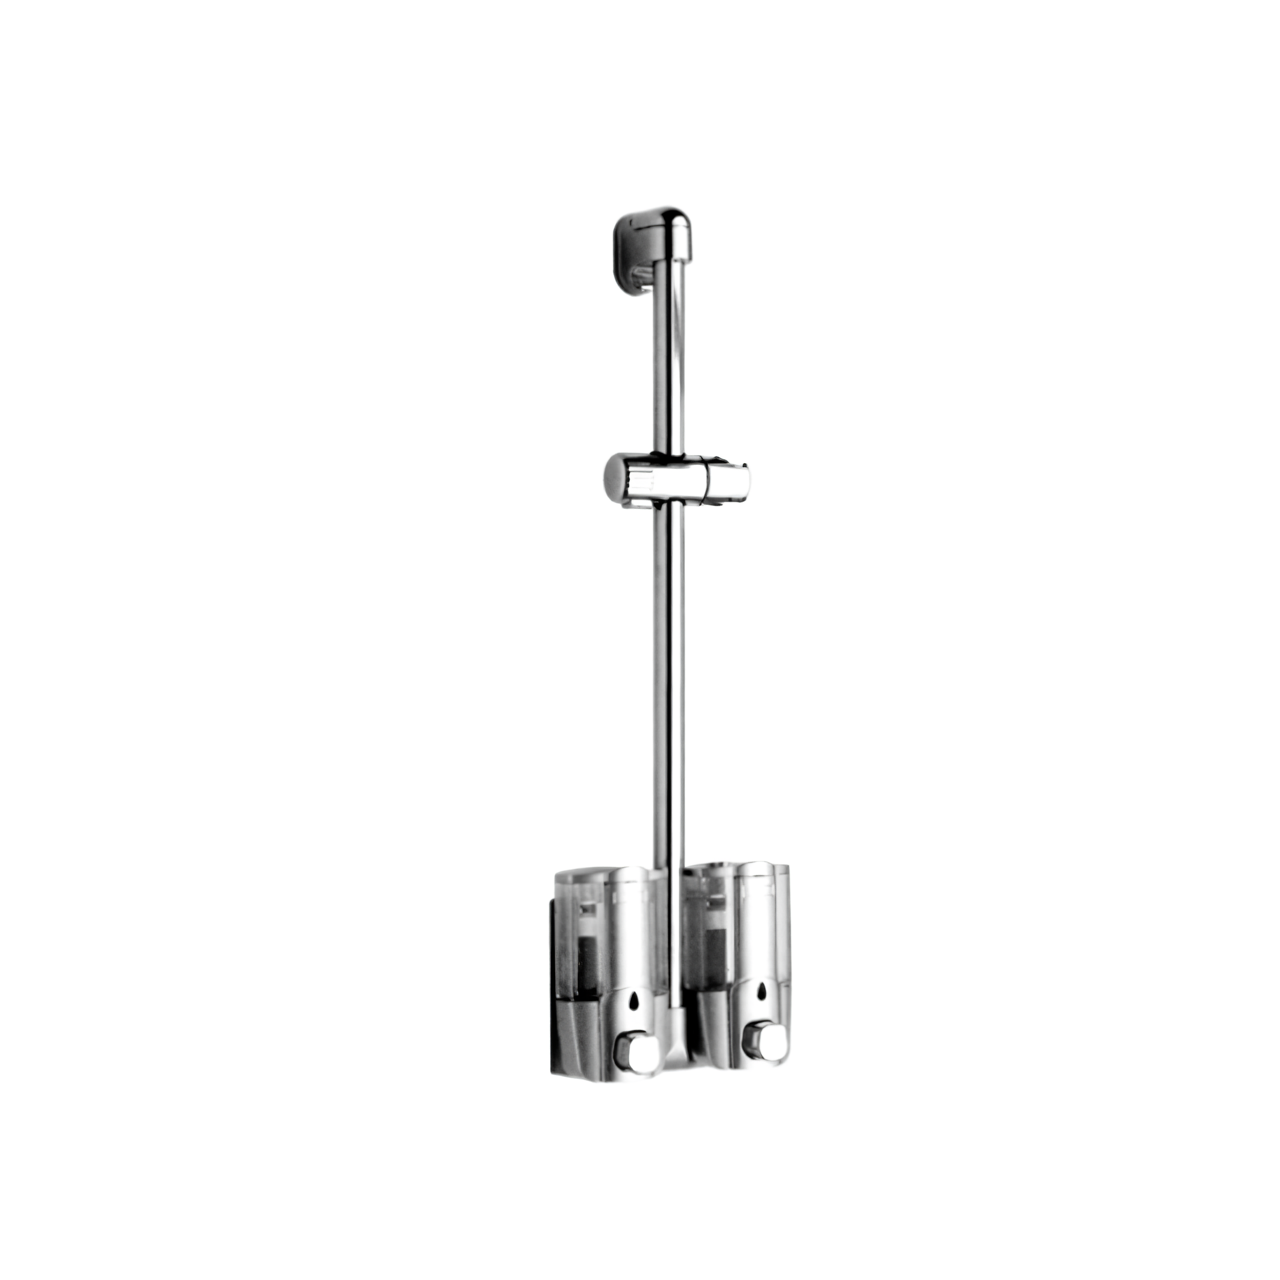 H138C Wall Mount Bathroom Slide Bar with Soap Dispenser Handheld Shower Head Slide Bar Polished Chrome Bathroom Shower Sliding Bar